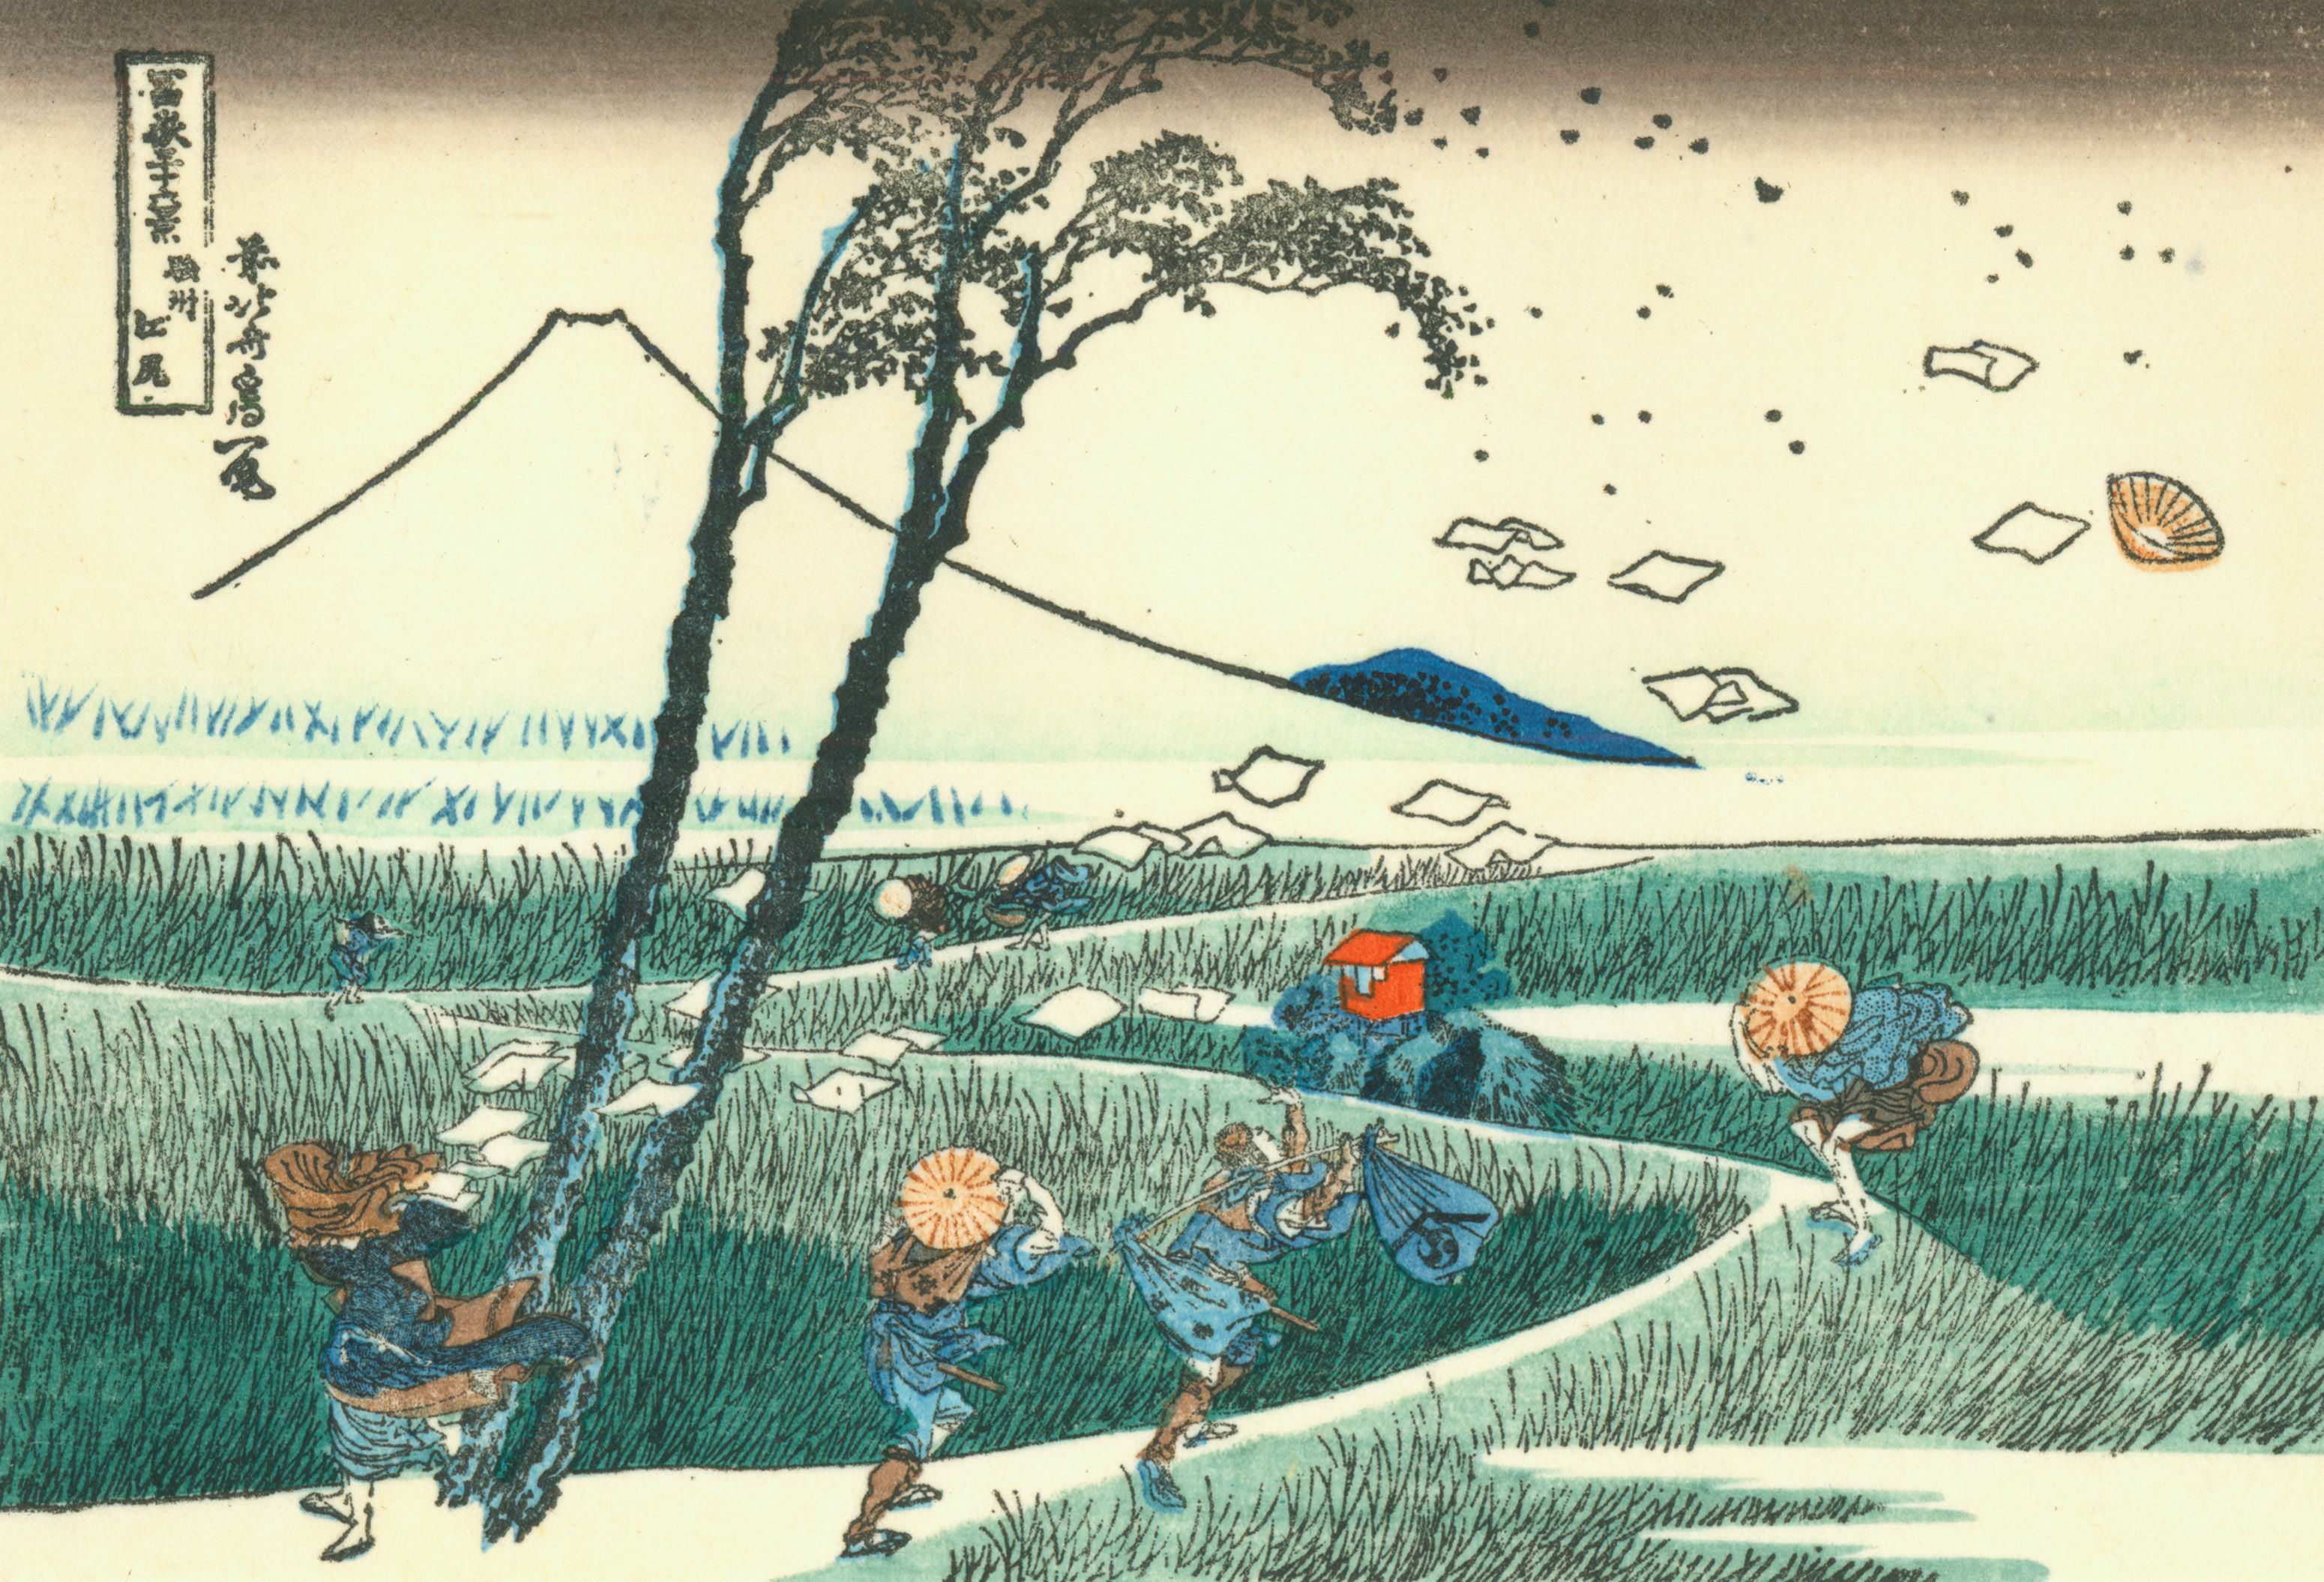 스루가 지방의 에지리 by Katsushika Hokusai - 1830년 경 - 25.4 x 37.1 cm 